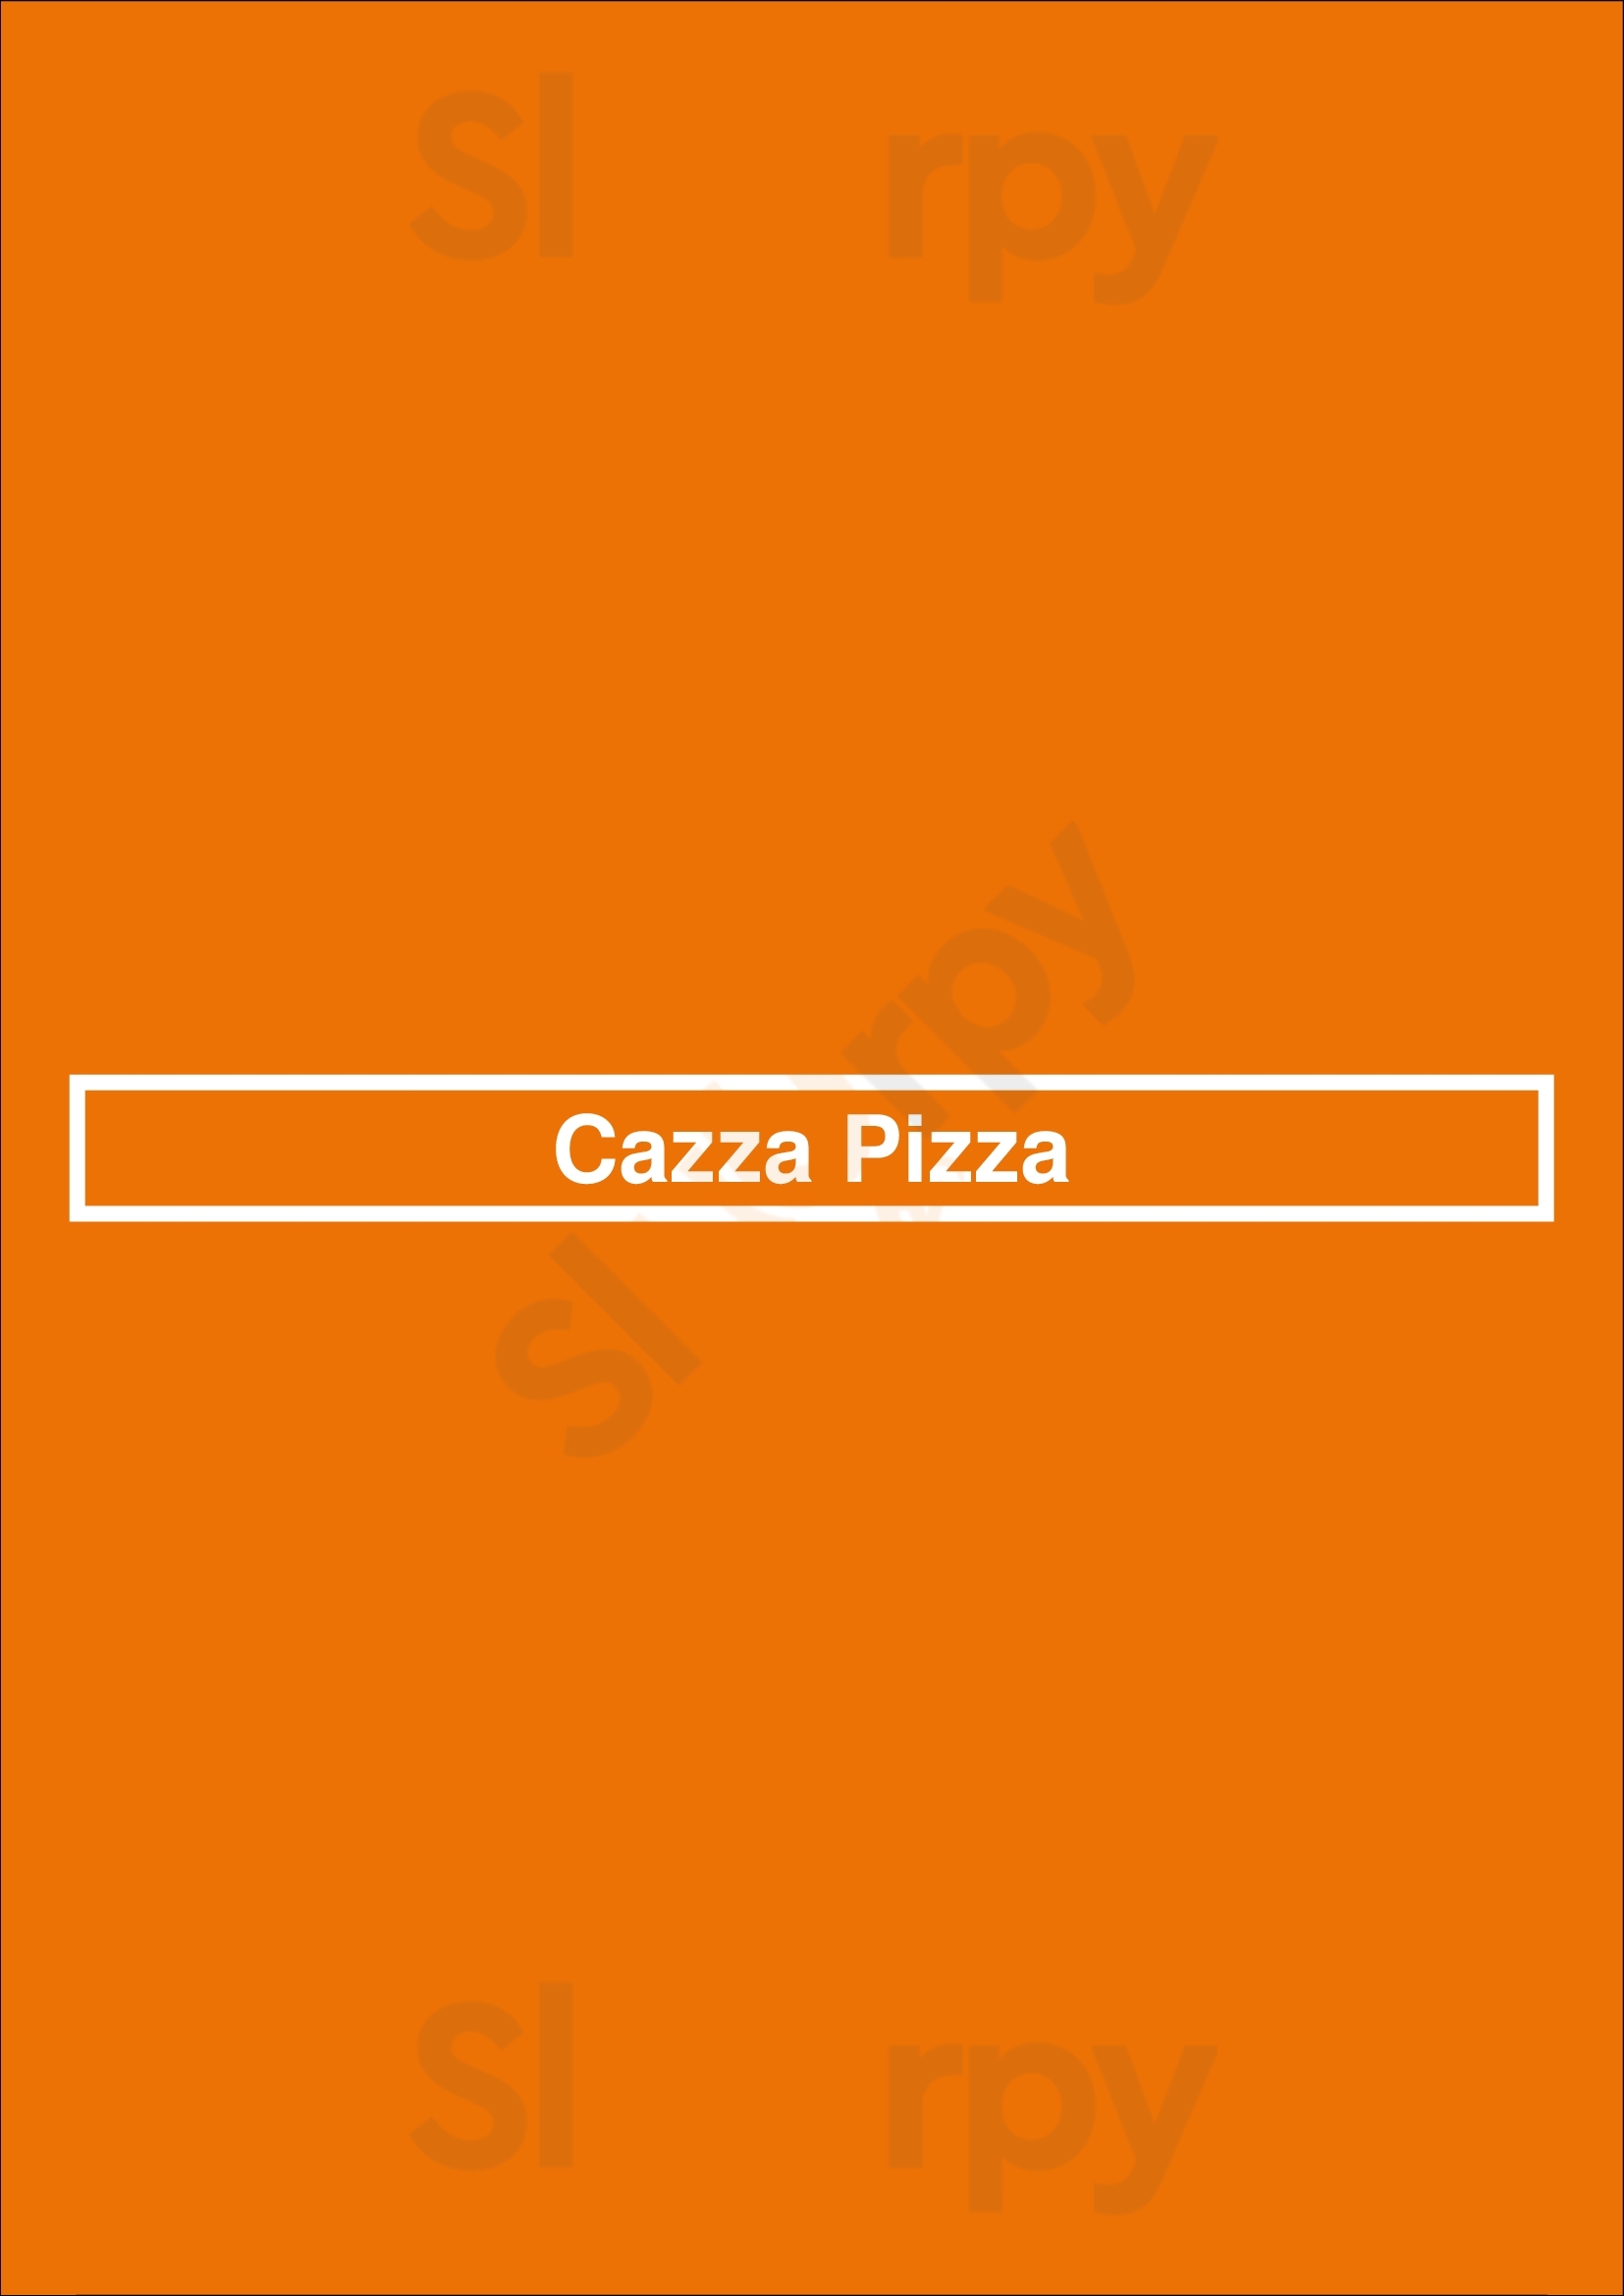 Cazza Pizza Gatineau Menu - 1